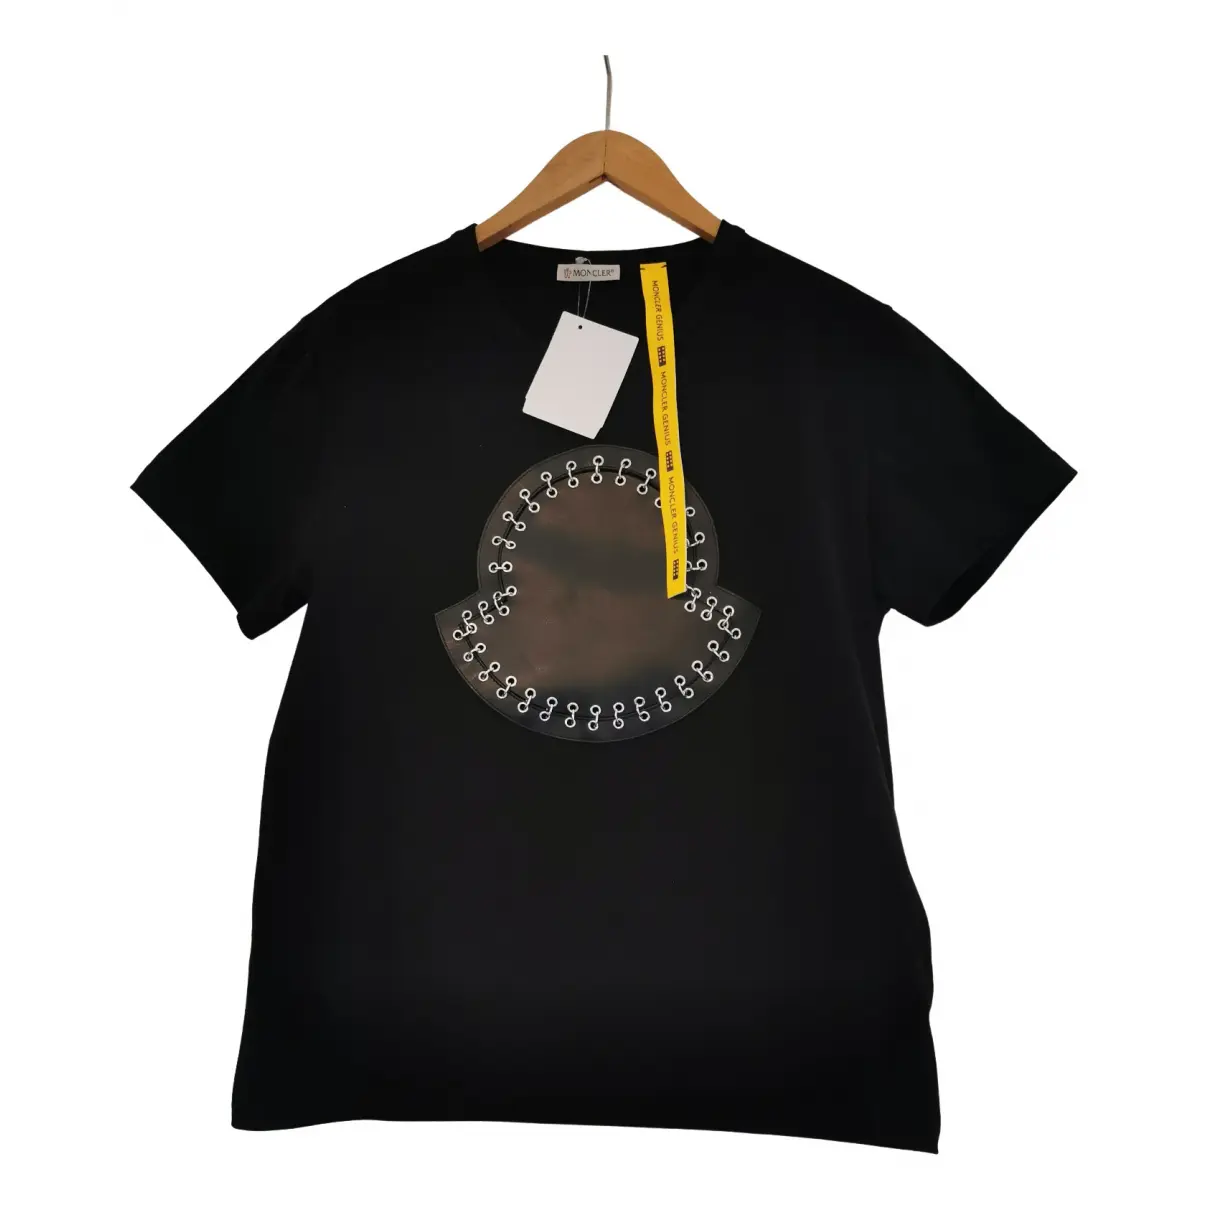 Moncler n°6 Noir Kei Ninomiya t-shirt Moncler Genius